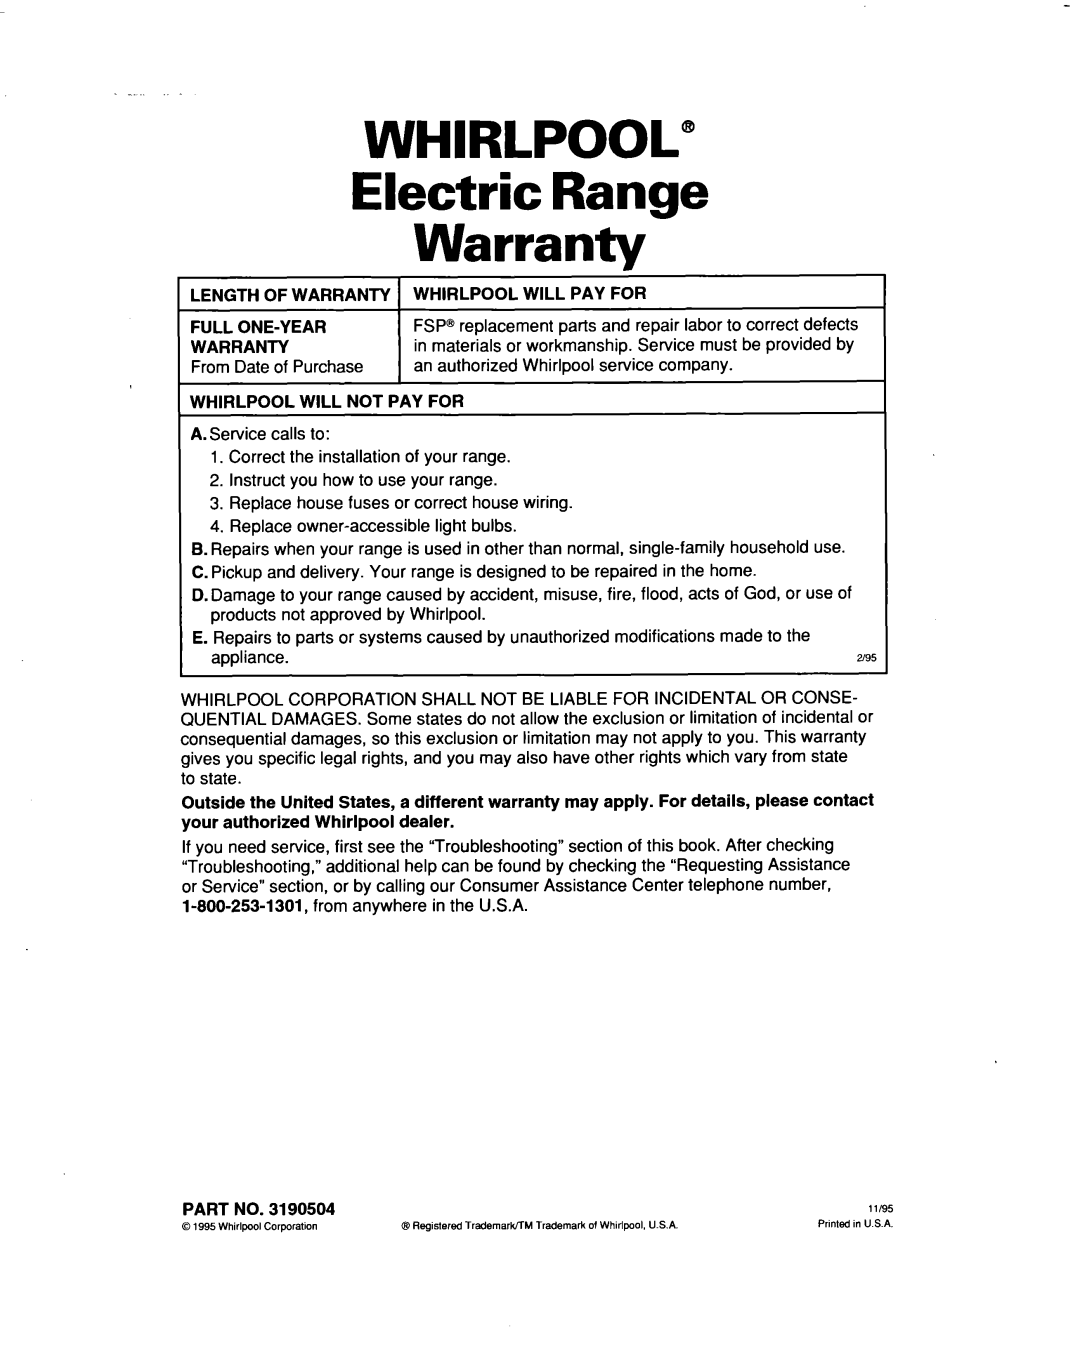 Whirlpool RF367PXD warranty WHIRLPOOL” Electric Range Warranty 